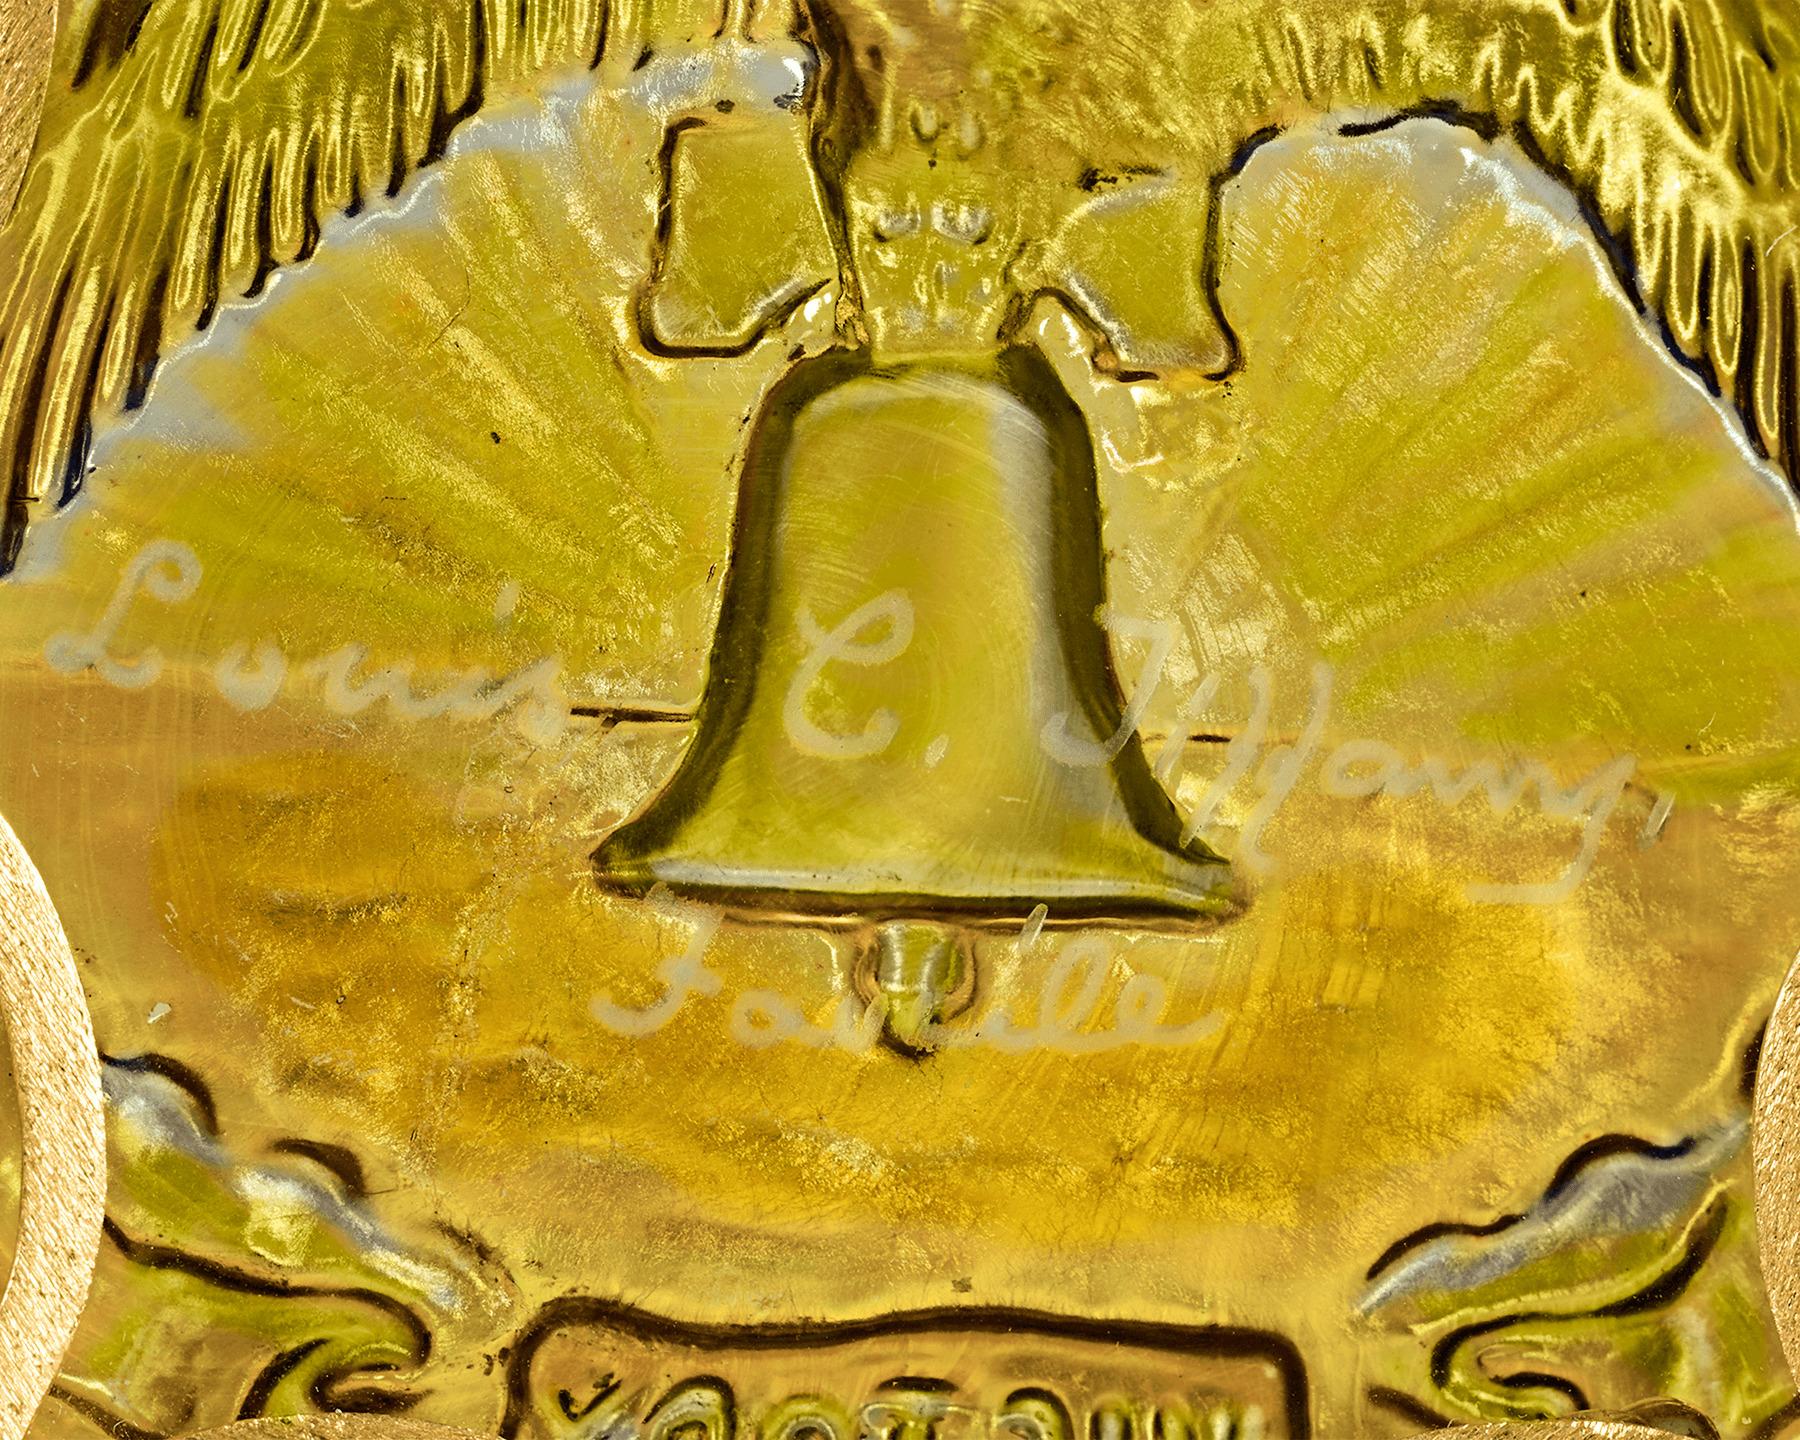 Der Jugendstilpionier und begnadete amerikanische Kunsthandwerker Louis Comfort Tiffany schuf dieses Medaillon aus Favrilglas zur Feier des Sieges der Alliierten im Ersten Weltkrieg. Tiffanys majestätisch schillerndes Kunstglas hebt das patriotische